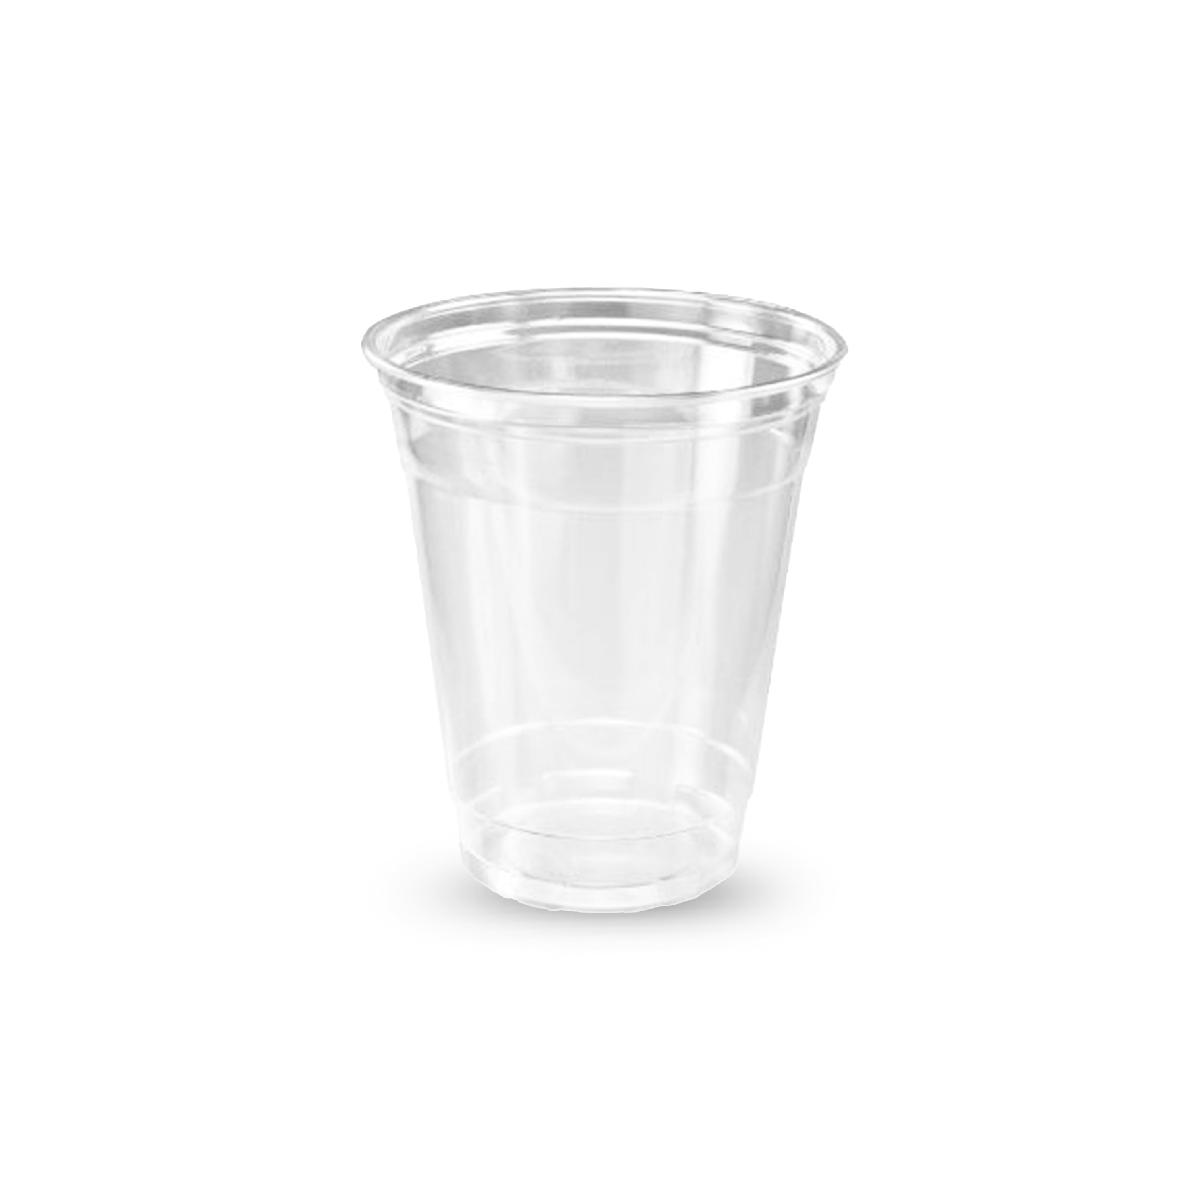 Стакан пластиковый 375мл d=90 Bubble Cup прозрачный глянцевый PP 1020 (25/500)